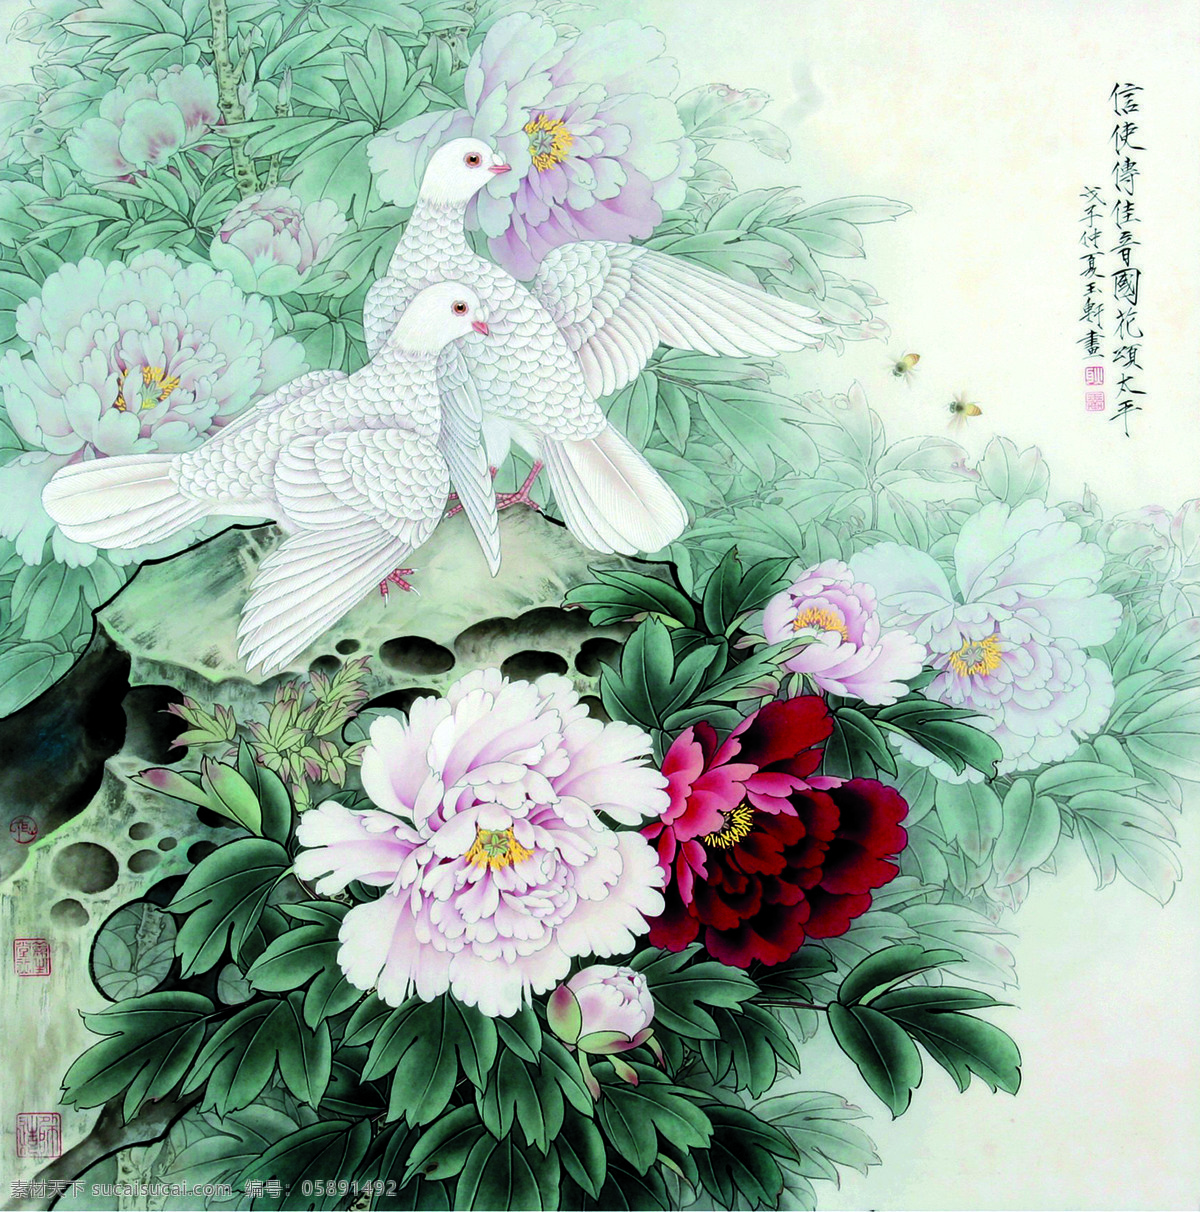 信使 传 佳音 国花 颂 太平 美术 中国画 工笔画 花鸟画 白鸽 牡丹花 文化艺术 绘画书法 白色